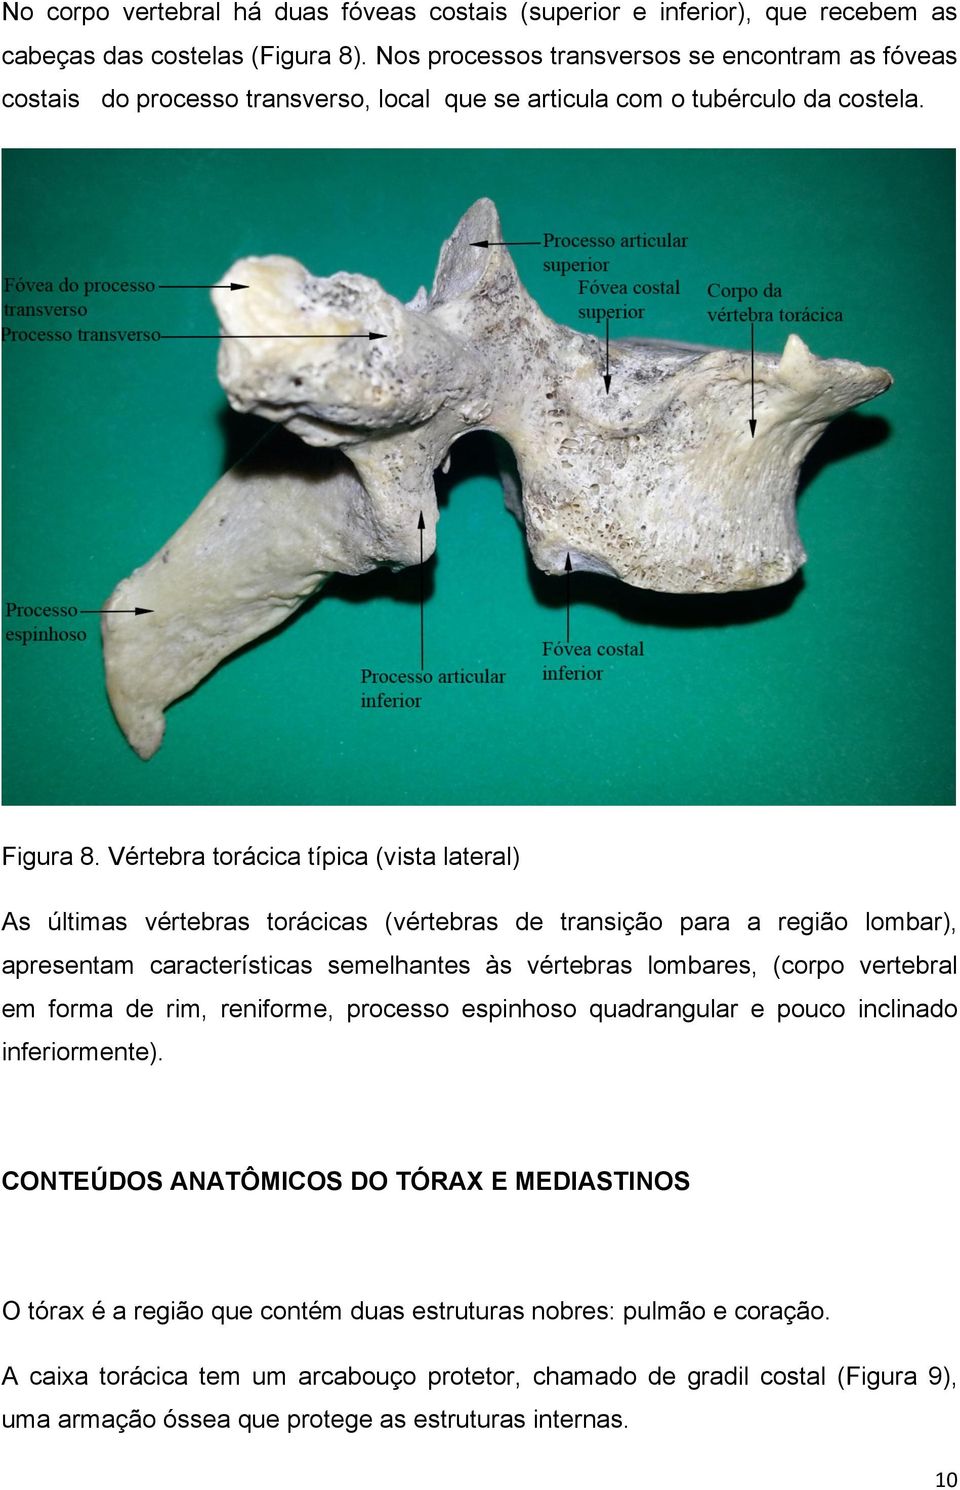 Vértebra torácica típica (vista lateral) As últimas vértebras torácicas (vértebras de transição para a região lombar), apresentam características semelhantes às vértebras lombares, (corpo vertebral